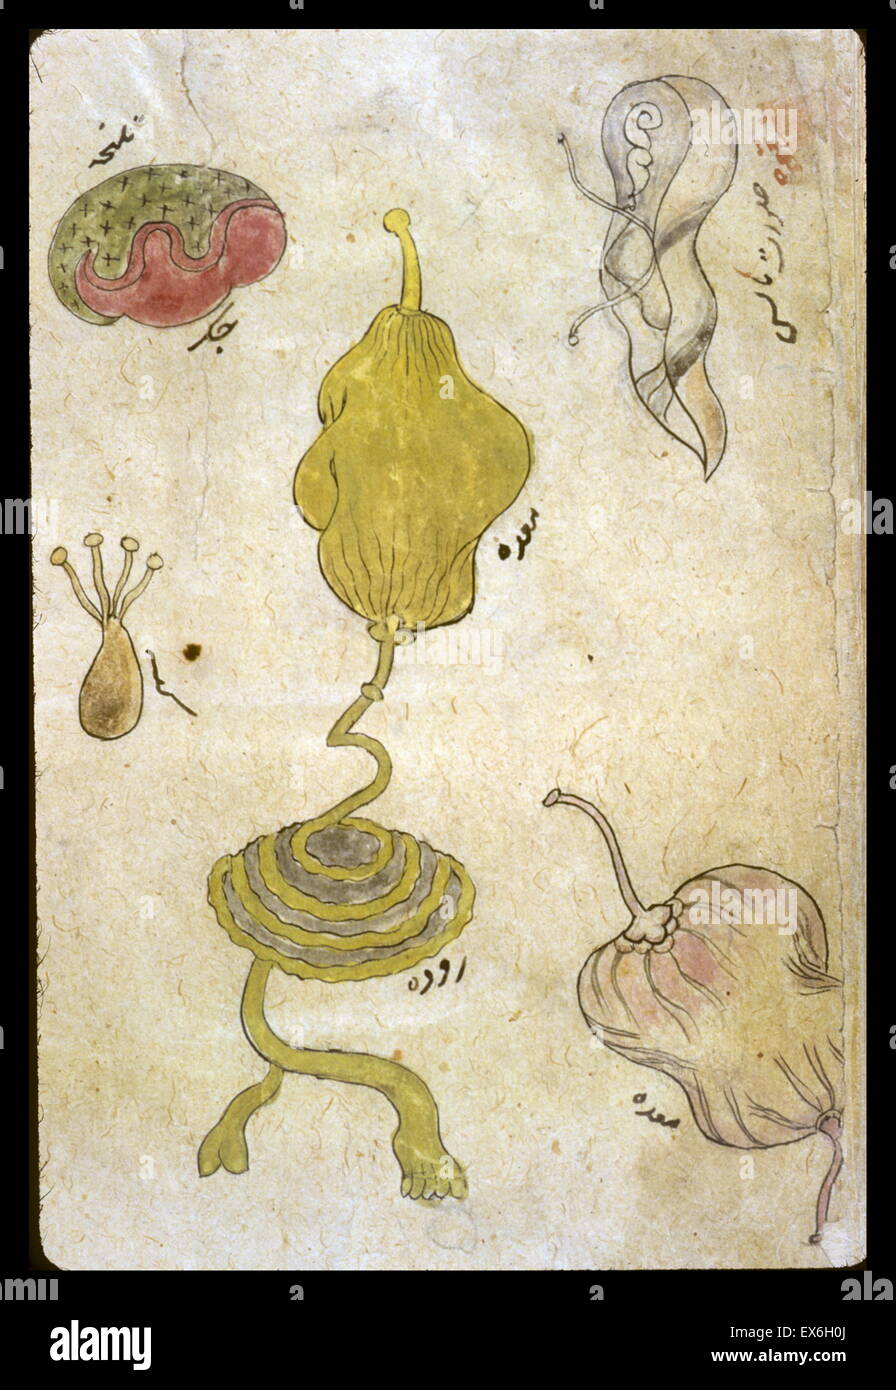 Zeichnungen der einzelnen Organe in Tinten und deckenden Wasserfarben. Dargestellt sind [oben links] die Leber mit Gallenblase, [in der Mitte] den Magen mit Darm, [unten links] die Hoden, [unten rechts] ein Detail des Magens, und etwas Uniden Stockfoto